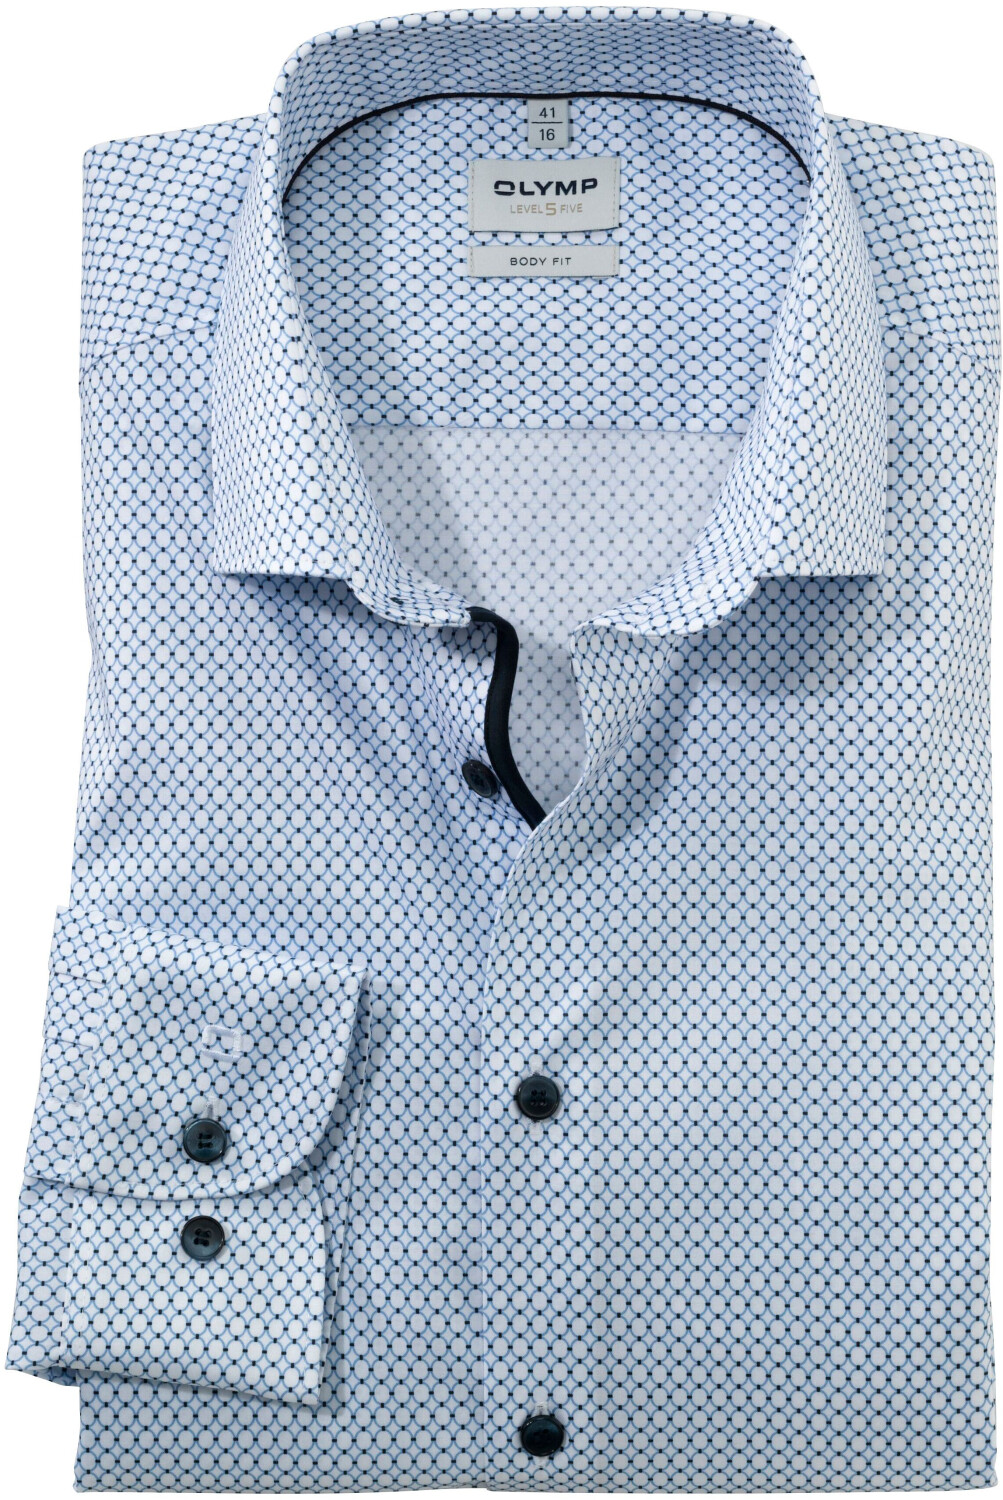 OLYMP Level Five Hemd Body Fit Modern Kent bleu (2063-24-11) ab 30,00 € |  Preisvergleich bei